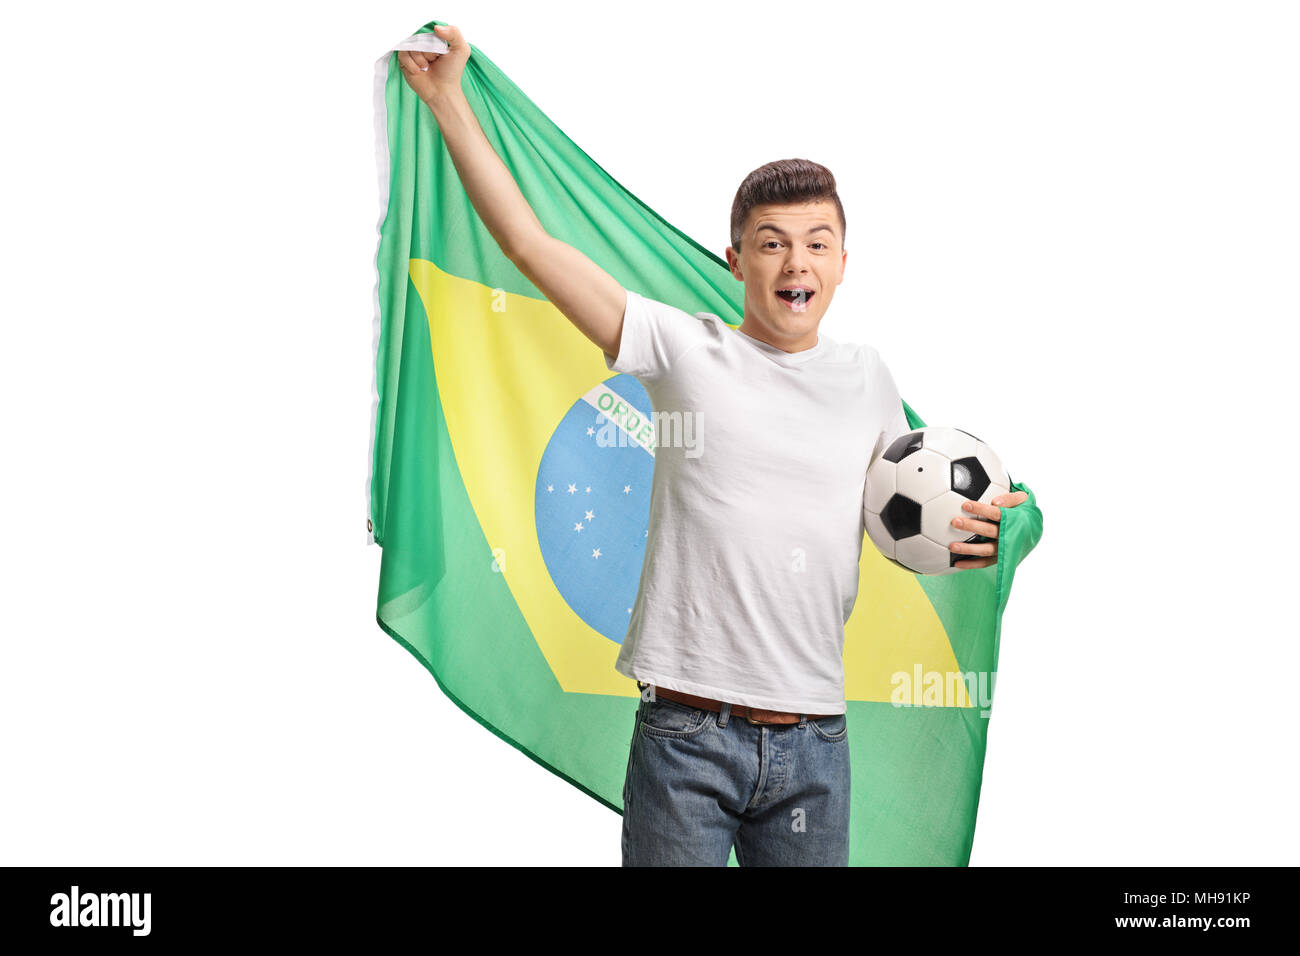 Les joyeux holding a football fan de foot et un drapeau brésilien isolé sur fond blanc Banque D'Images